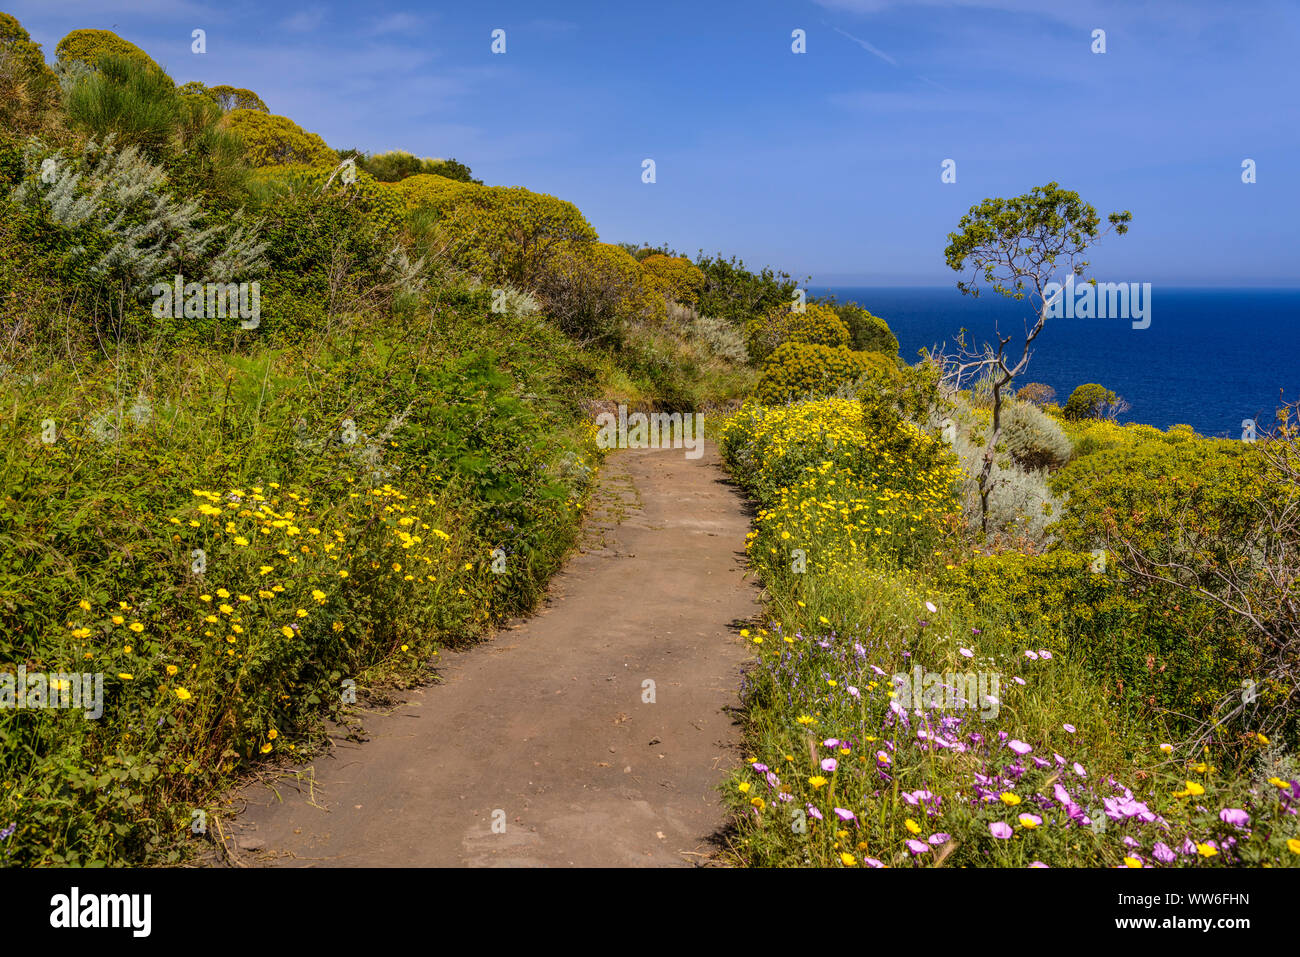 Italy, Sicily, Aeolian Islands, Stromboli, hiking trail to Sciara del Fuoco Stock Photo